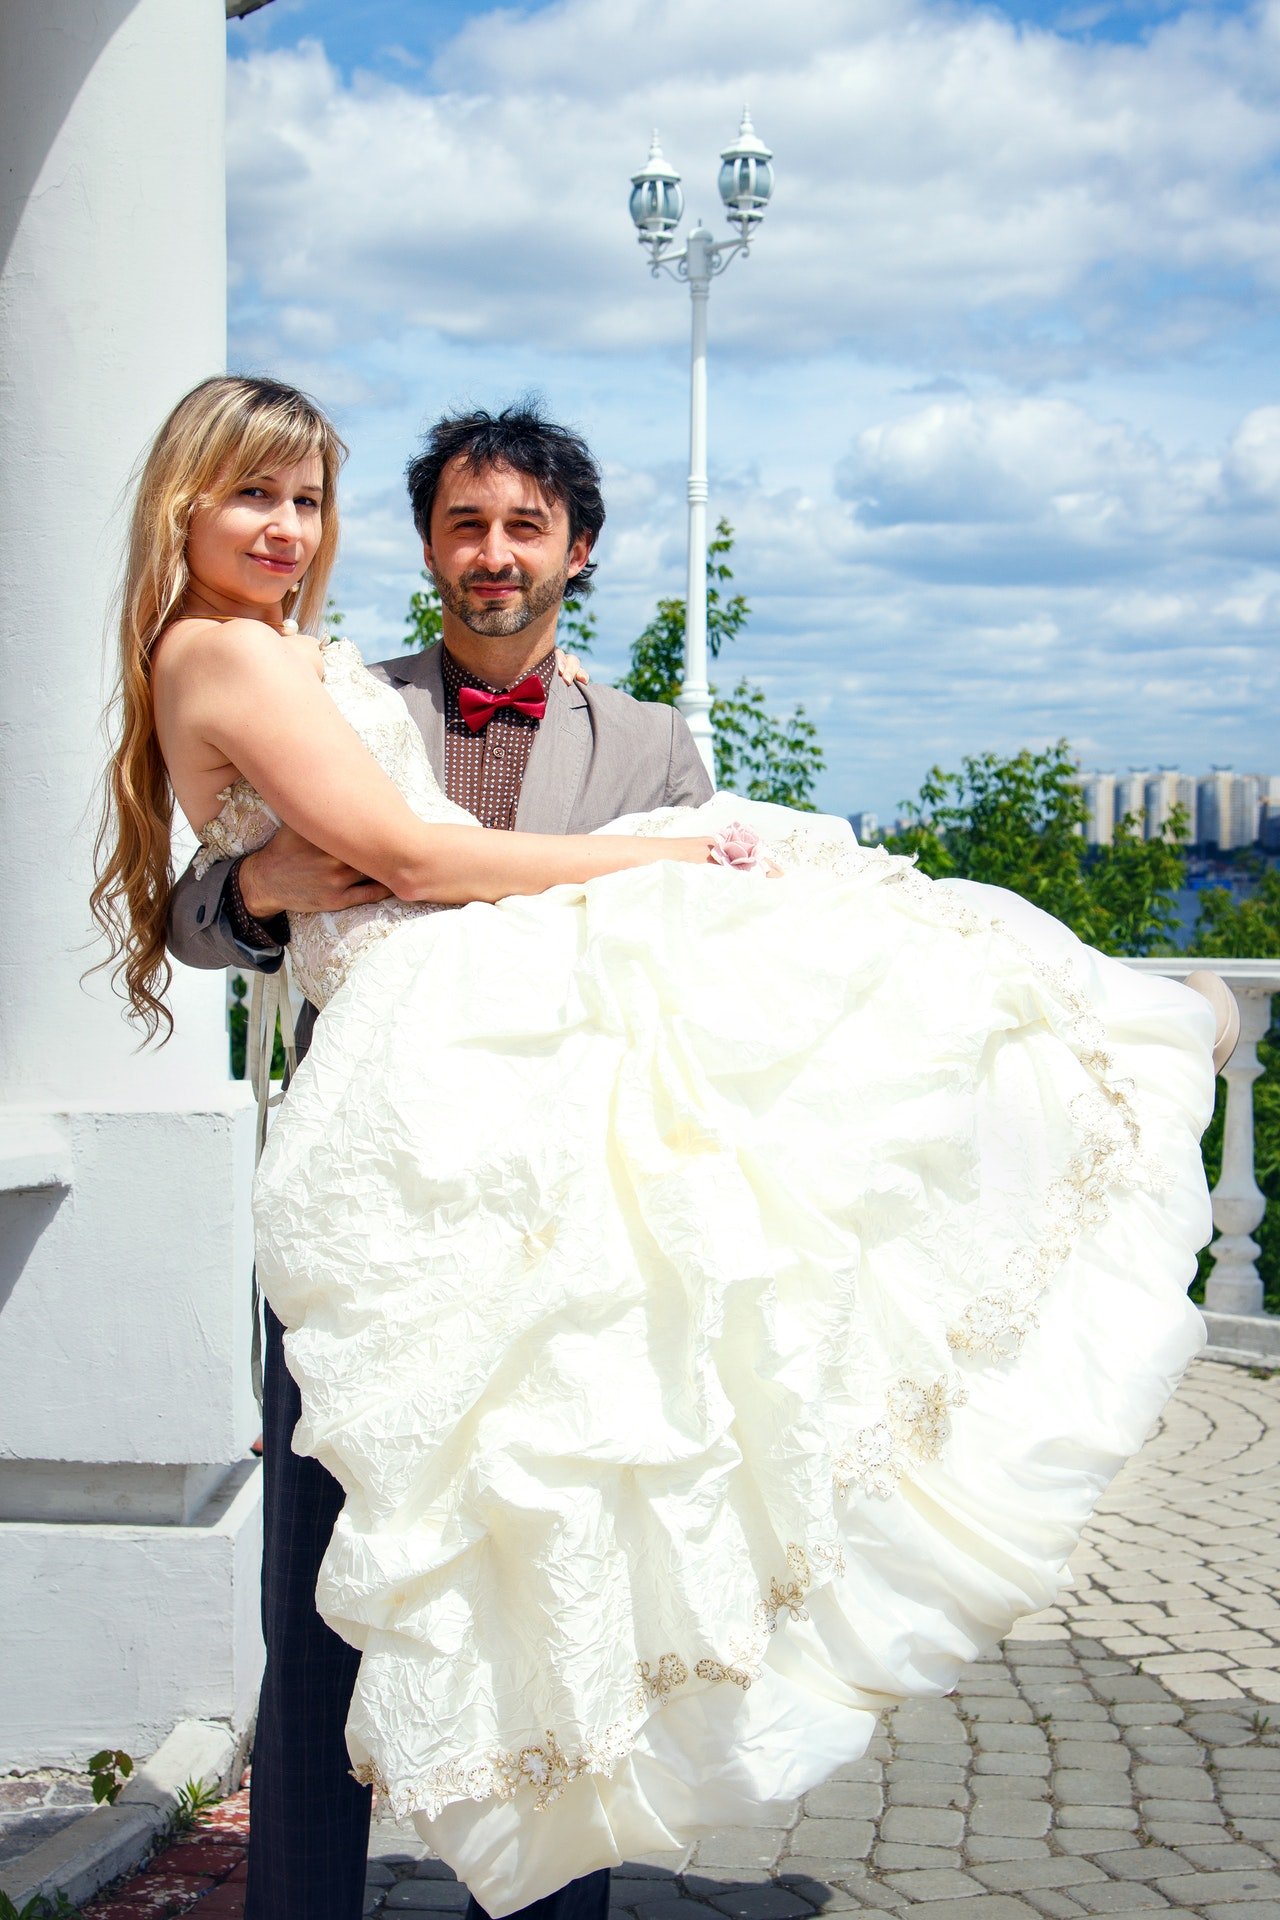 Un homme portant une femme dans une robe de mariée | Source : Pexels